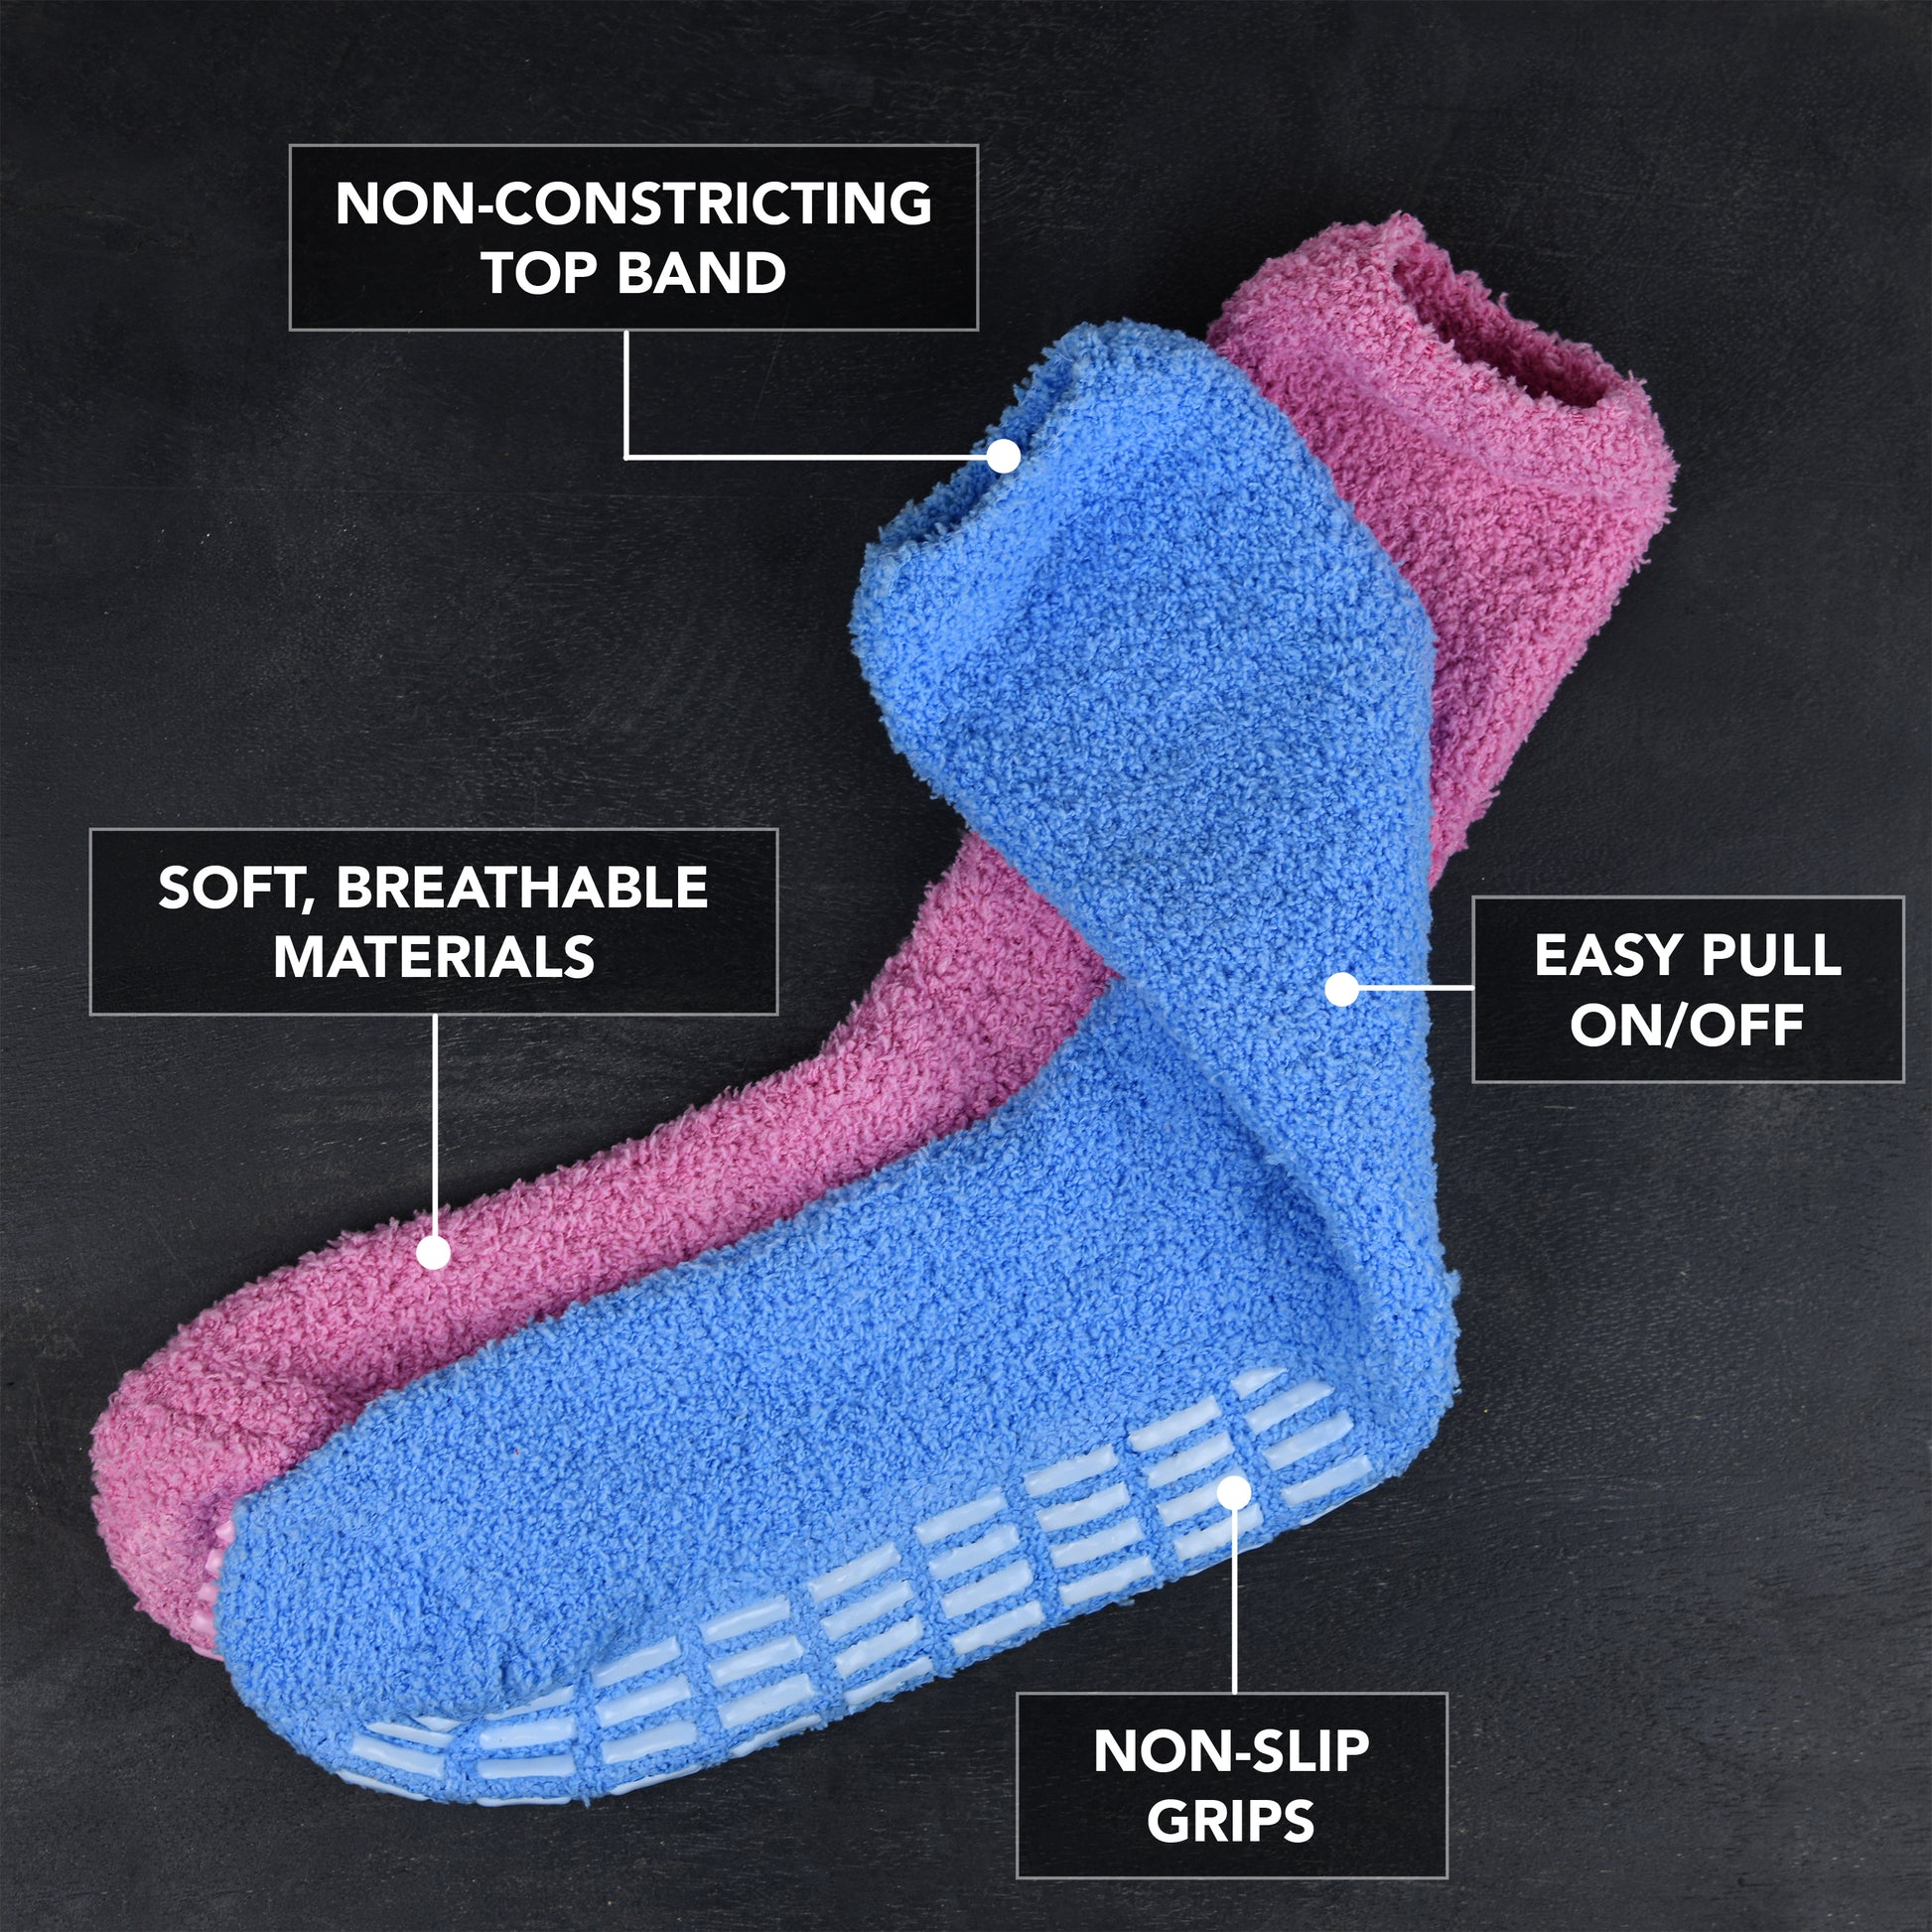 Non Slip Socks